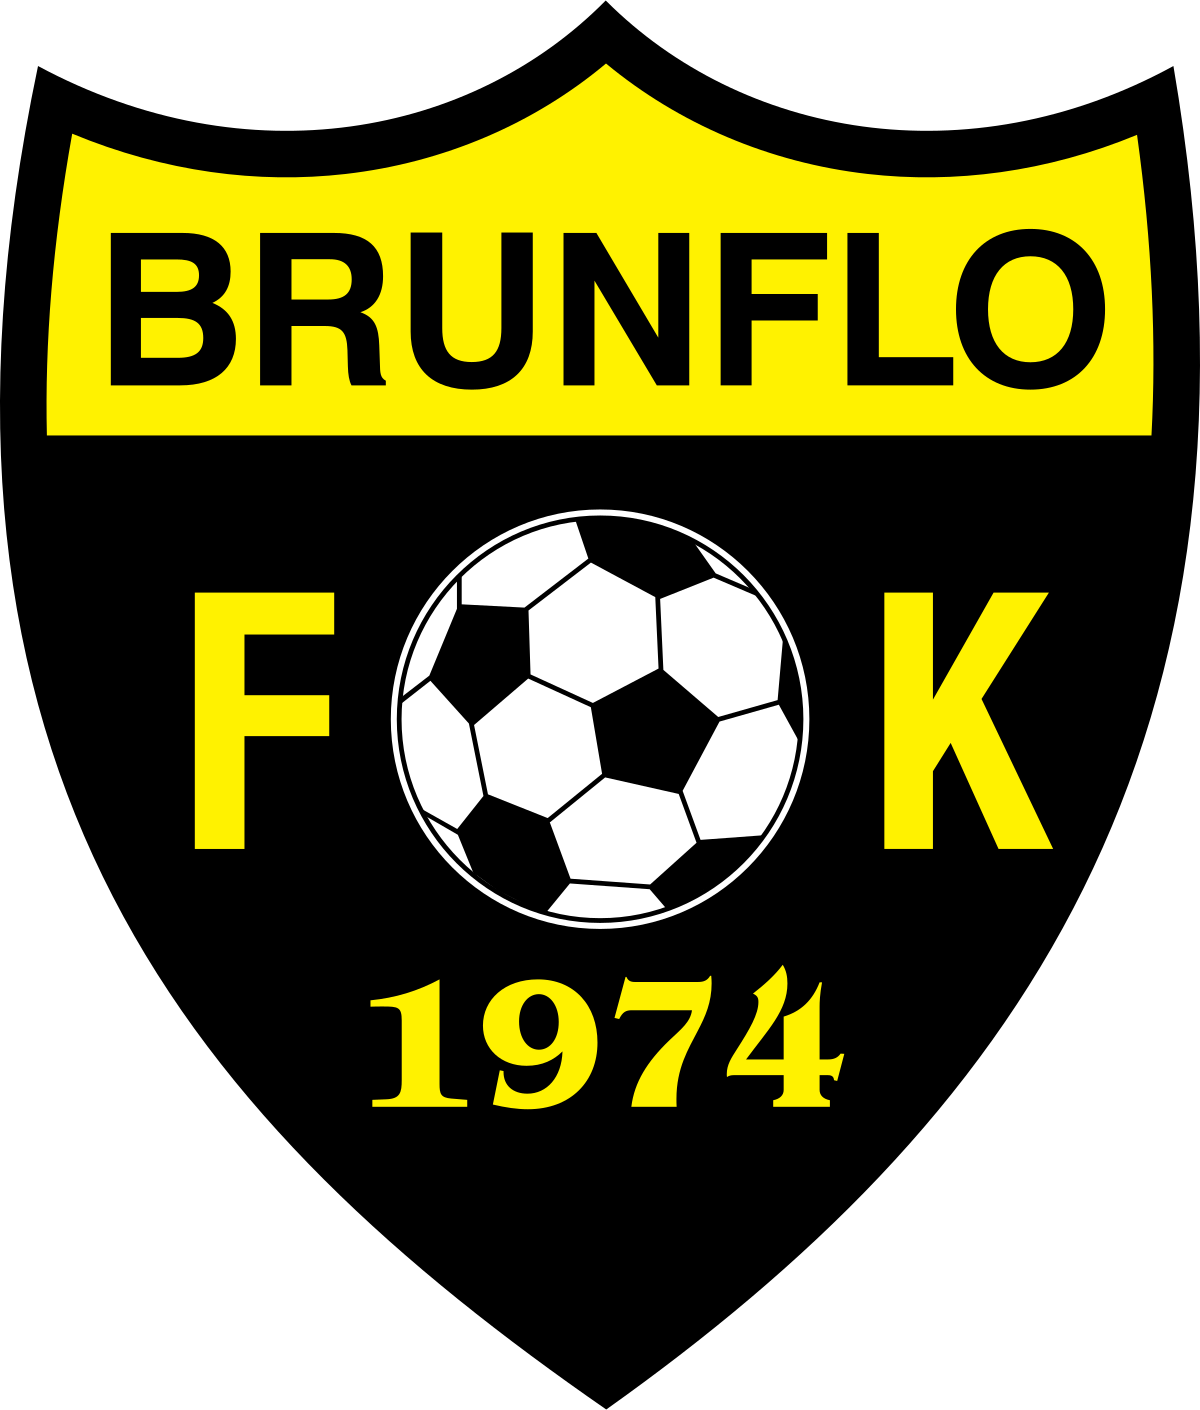 Brunflo FK